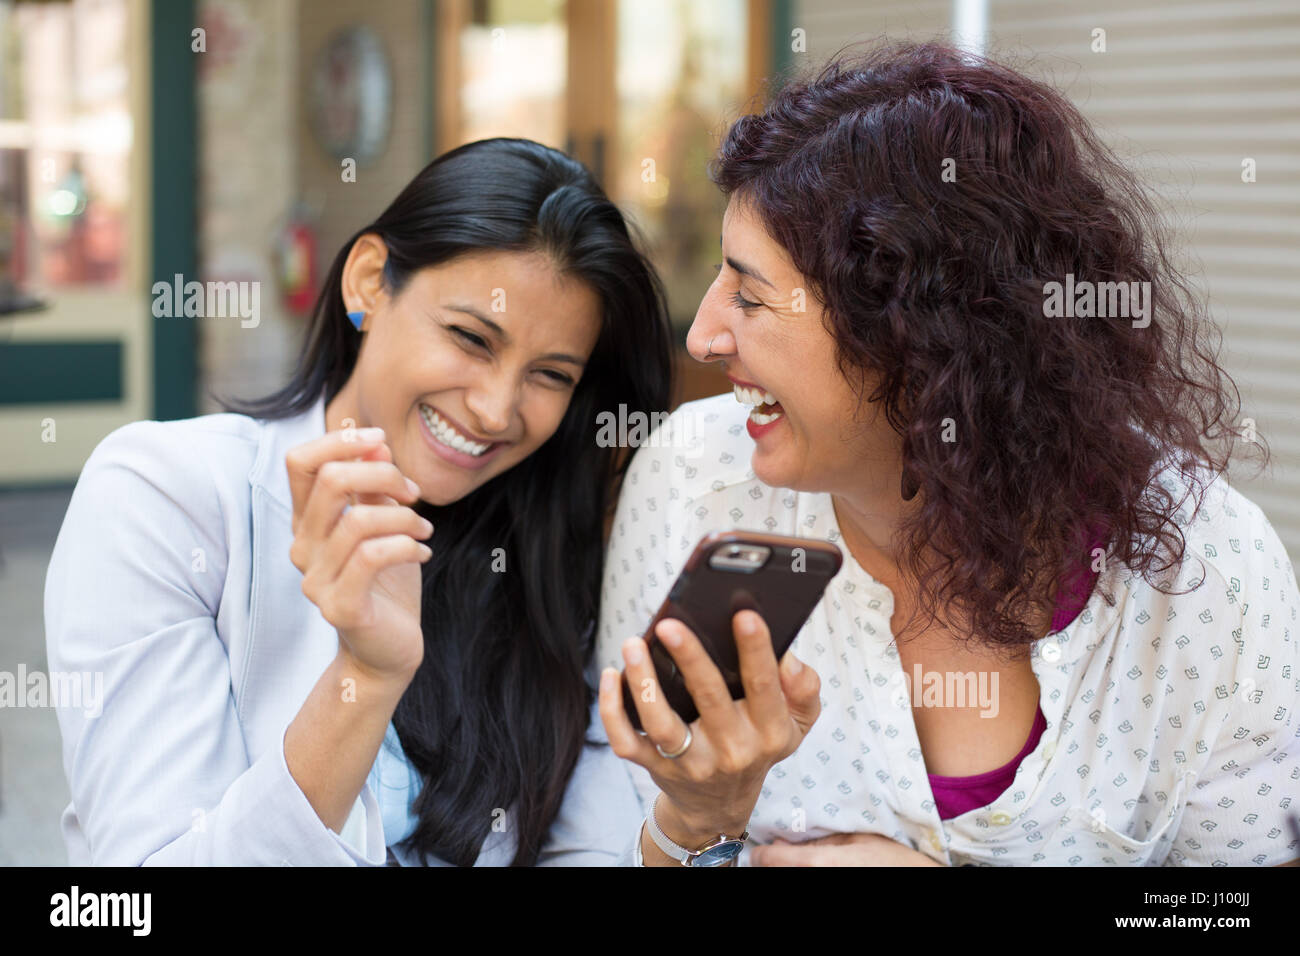 Closeup portrait surpris deux jeunes filles à la recherche de téléphone cellulaire, de discuter les derniers potins news, le partage de moments d'intimité, shopping, riant de ce qu'ils s Banque D'Images